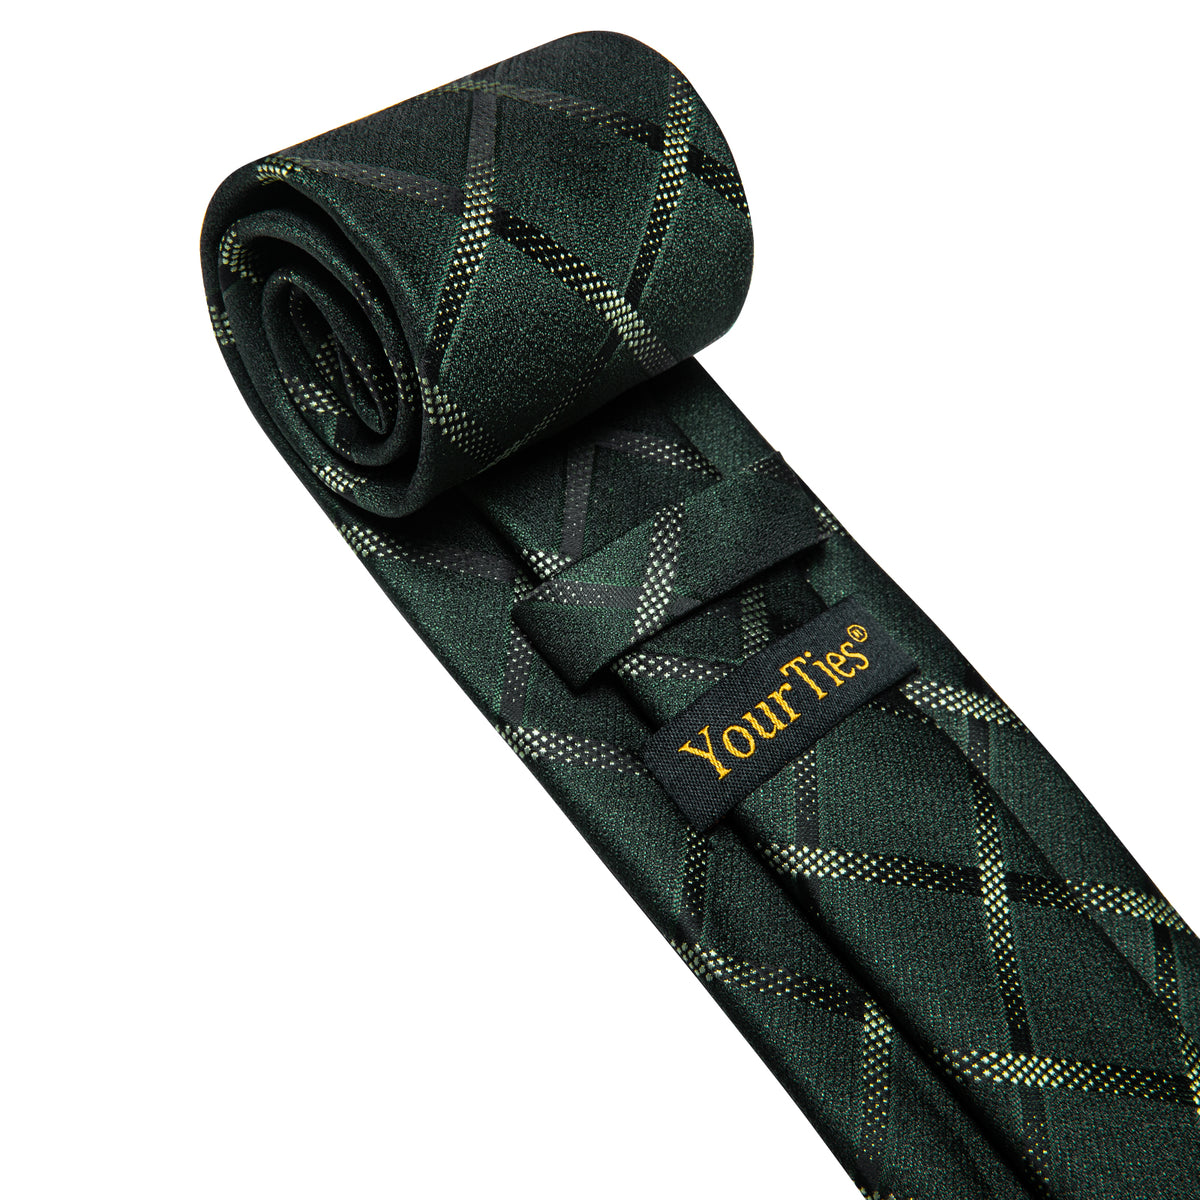 Dark Green Tie Plaid Men's Necktie Pocket Square Cufflinks Set